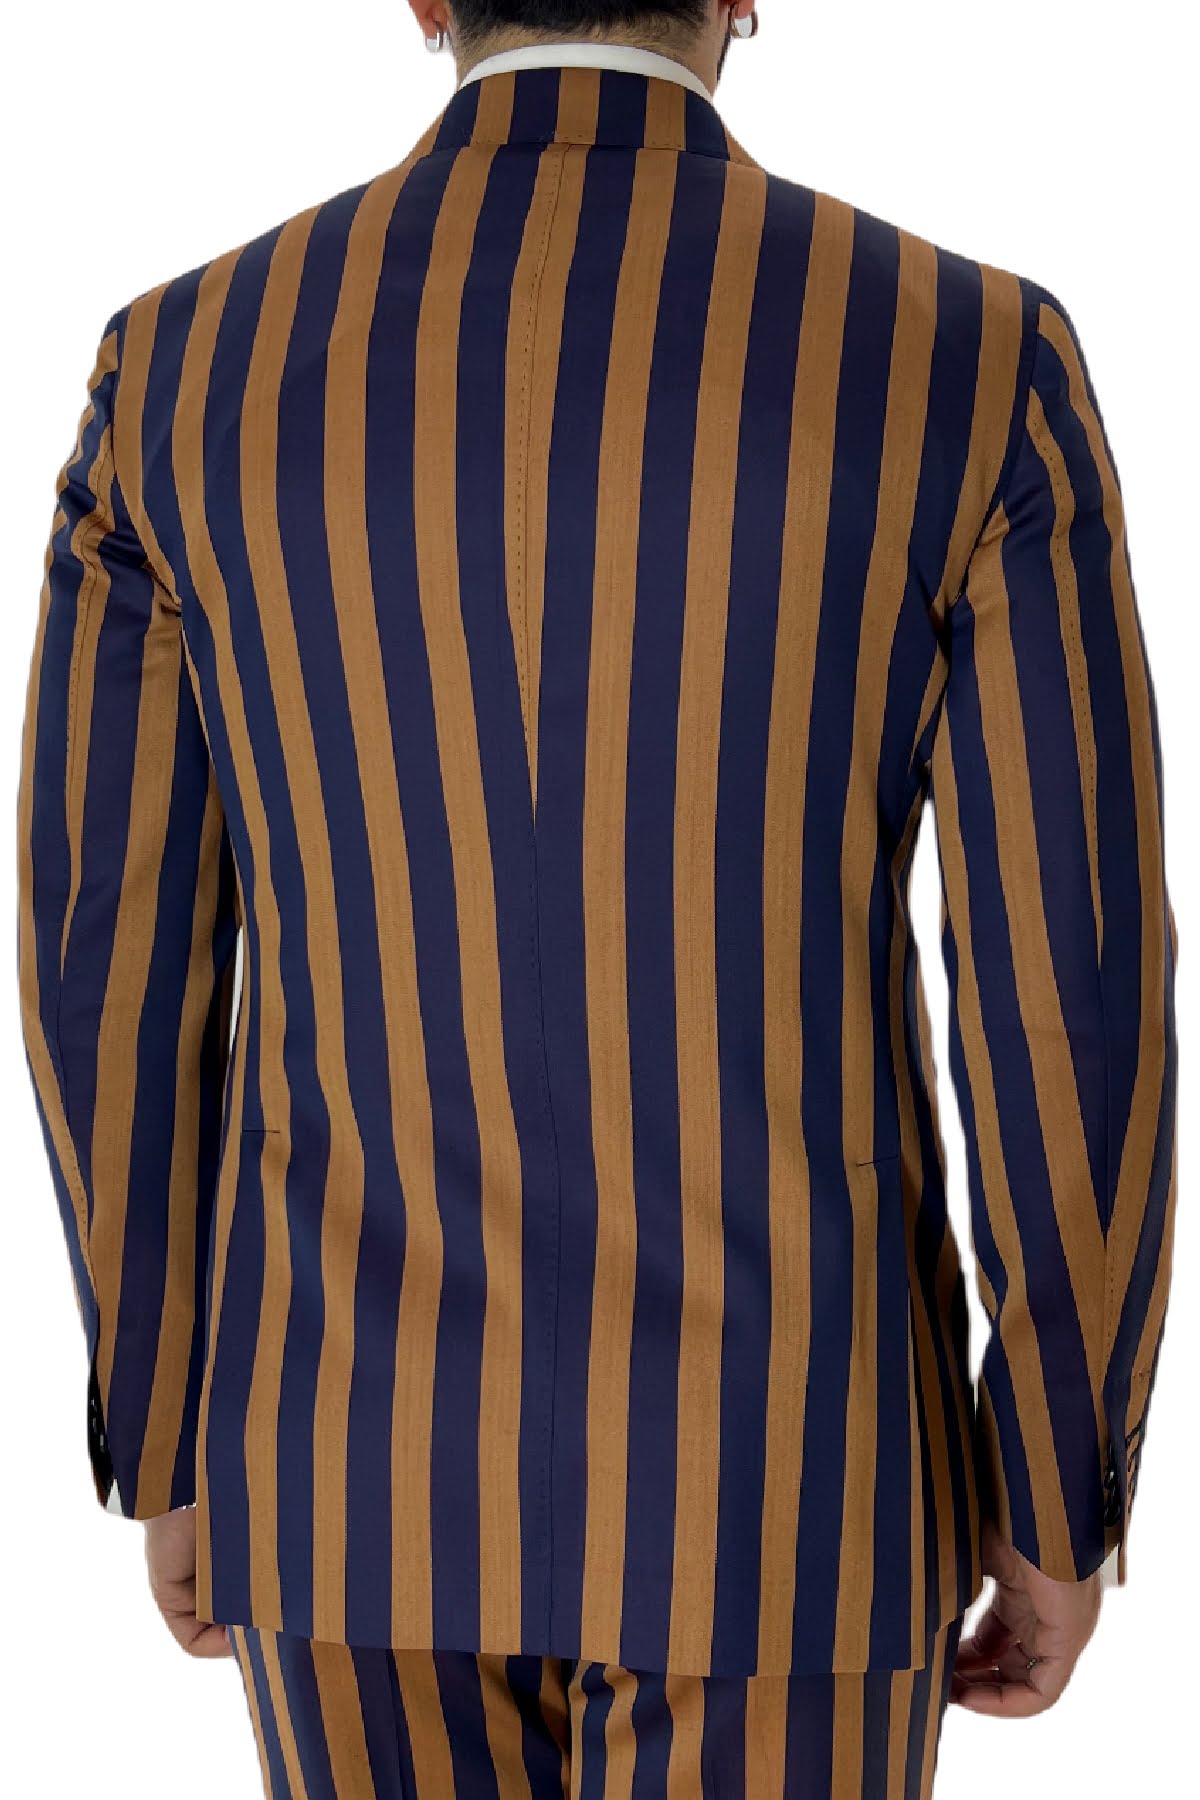 Abito uomo arancio riga blu con giacca doppiopetto e pantalone vita alta in fresco lana 120’s Holland & Sherry